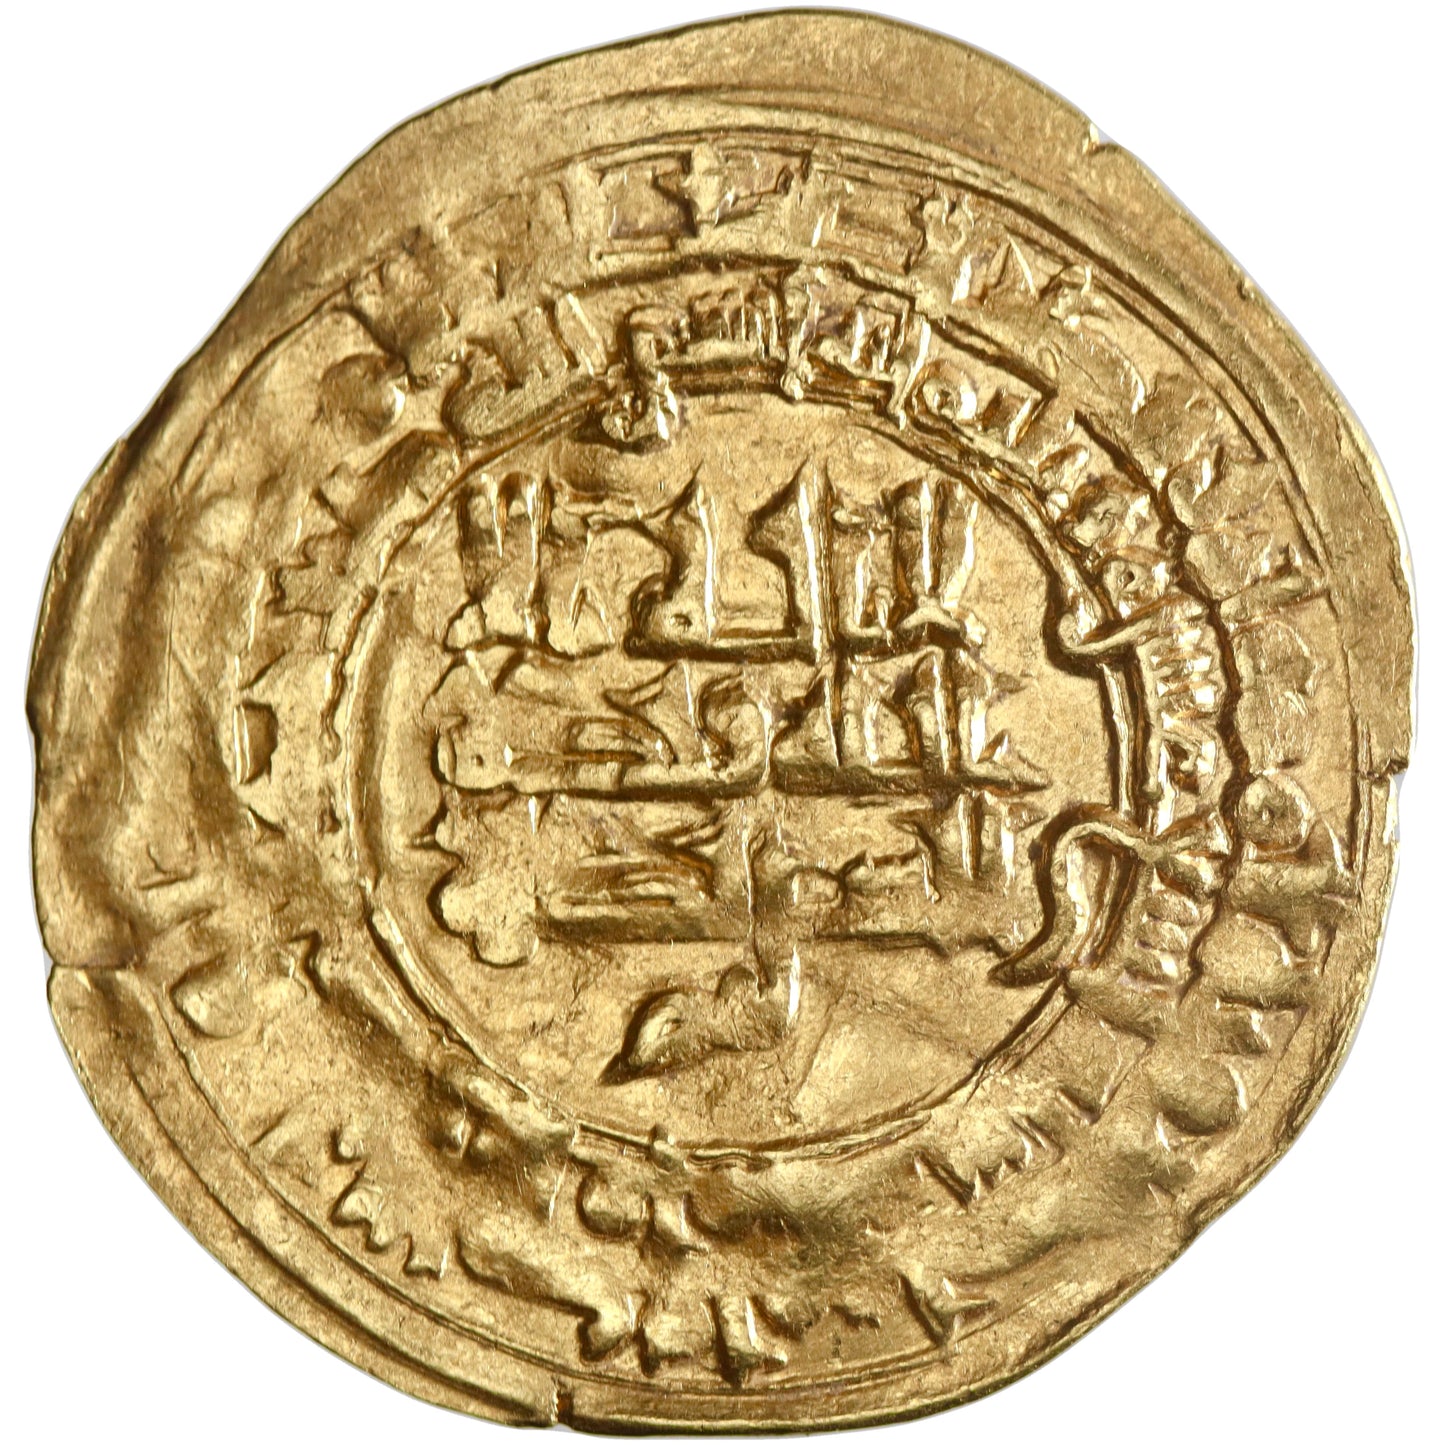 Samanid, Nasr II ibn Ahmad, gold dinar, al-Muhammadiya mint, AH 319, citing al-Muqtadir